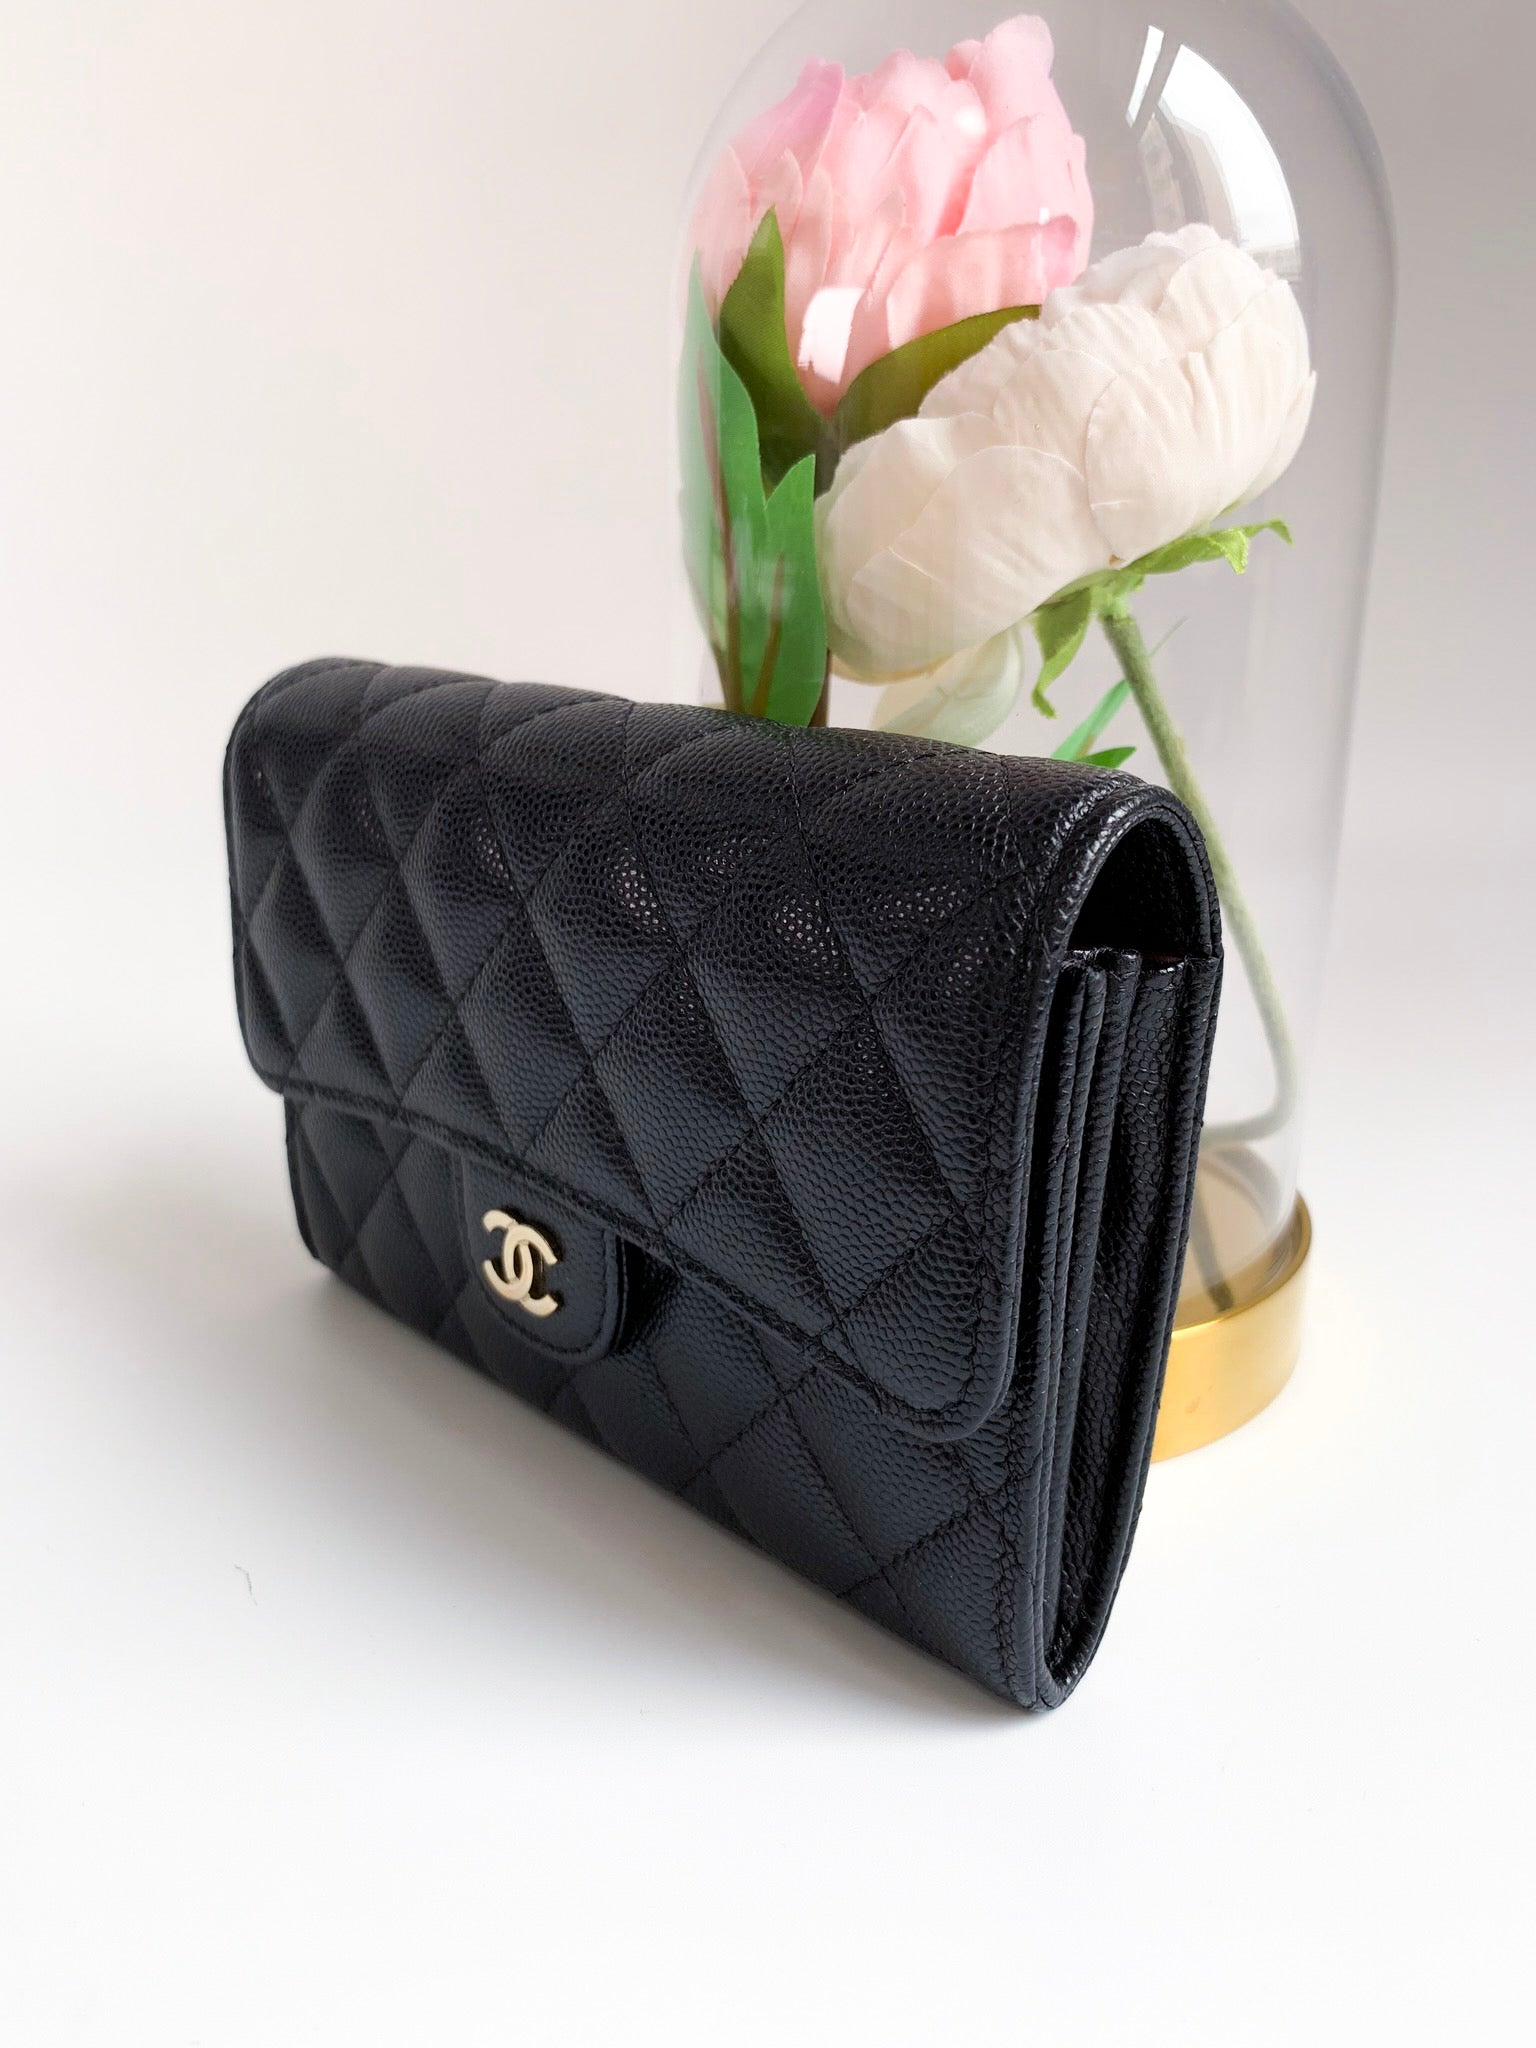 Chanel long wallet black 